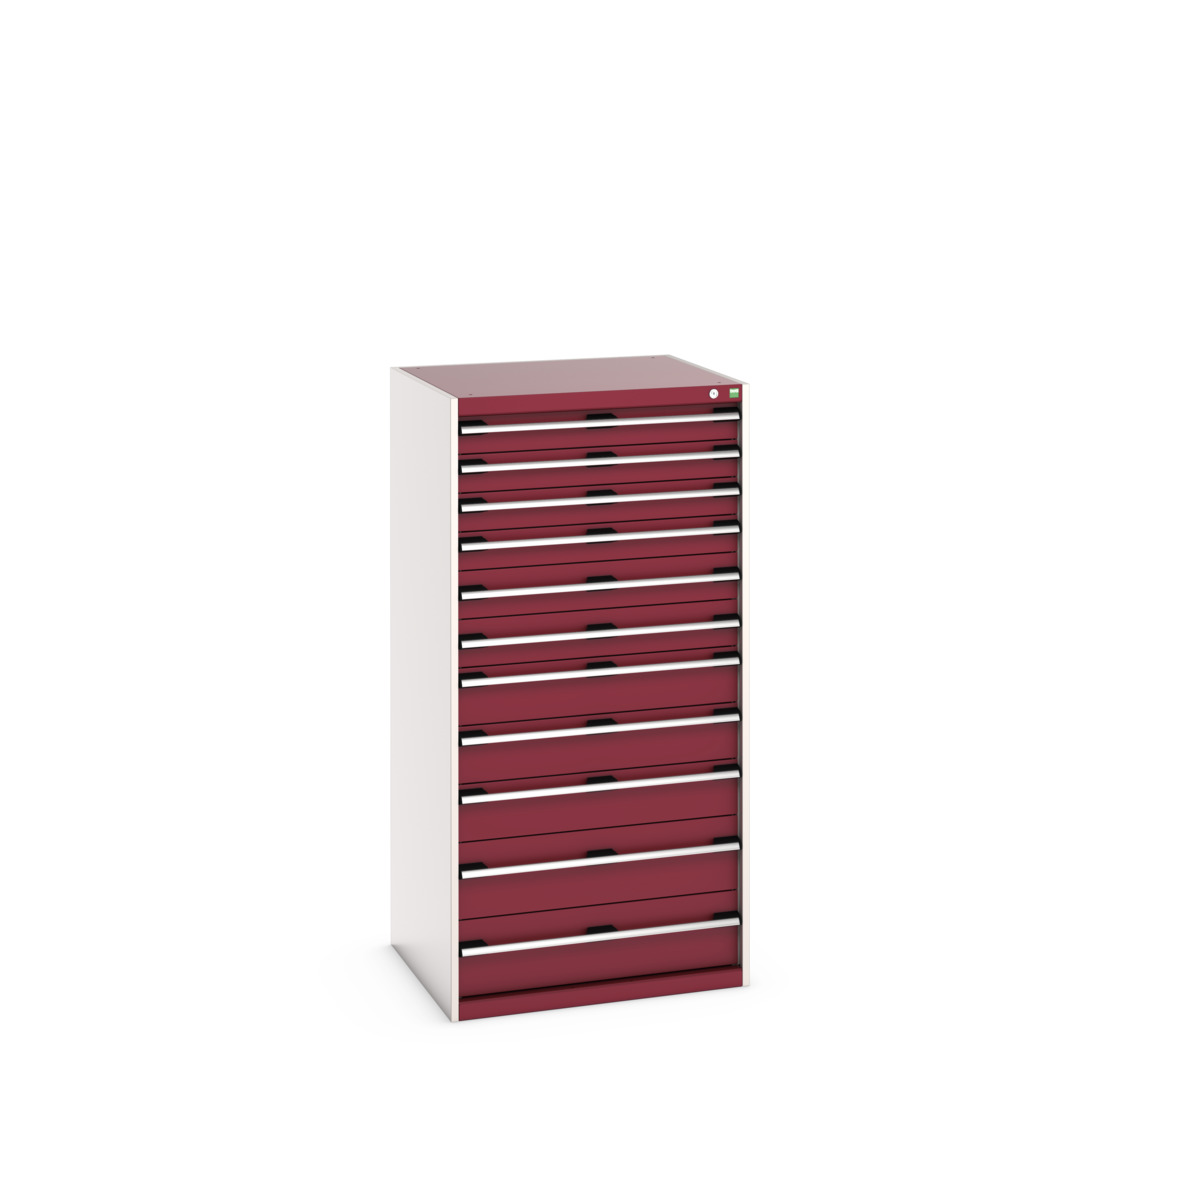 40028042.24V - cubio drawer cabinet